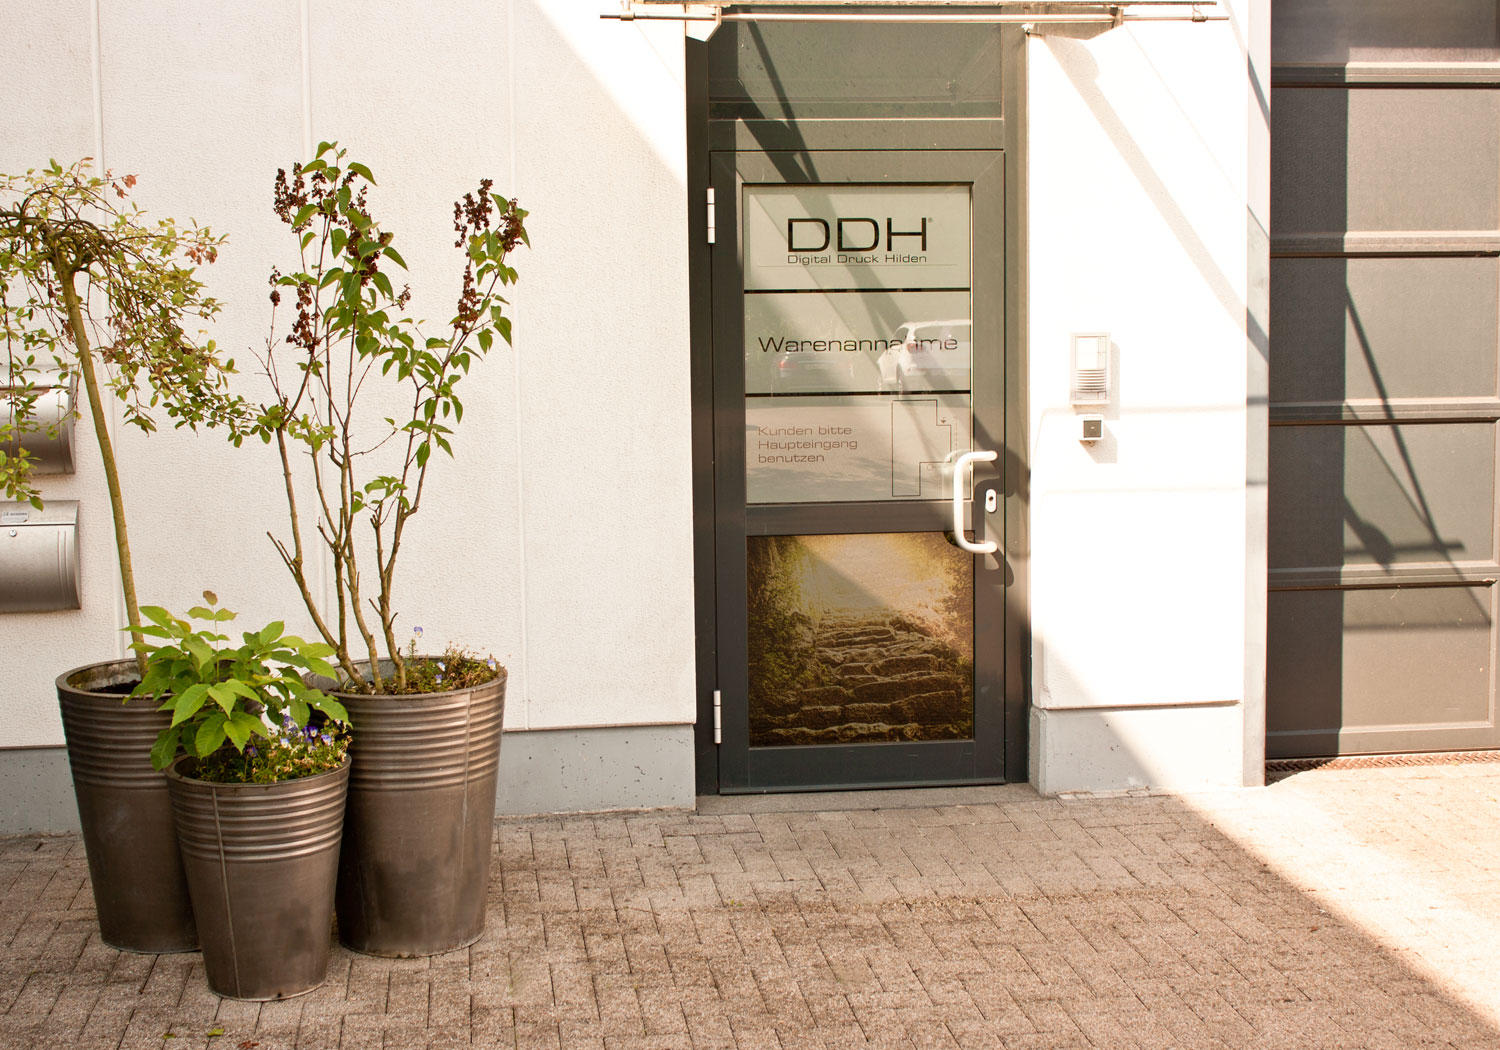 Bild der DDH GmbH - Digital Druck Hilden